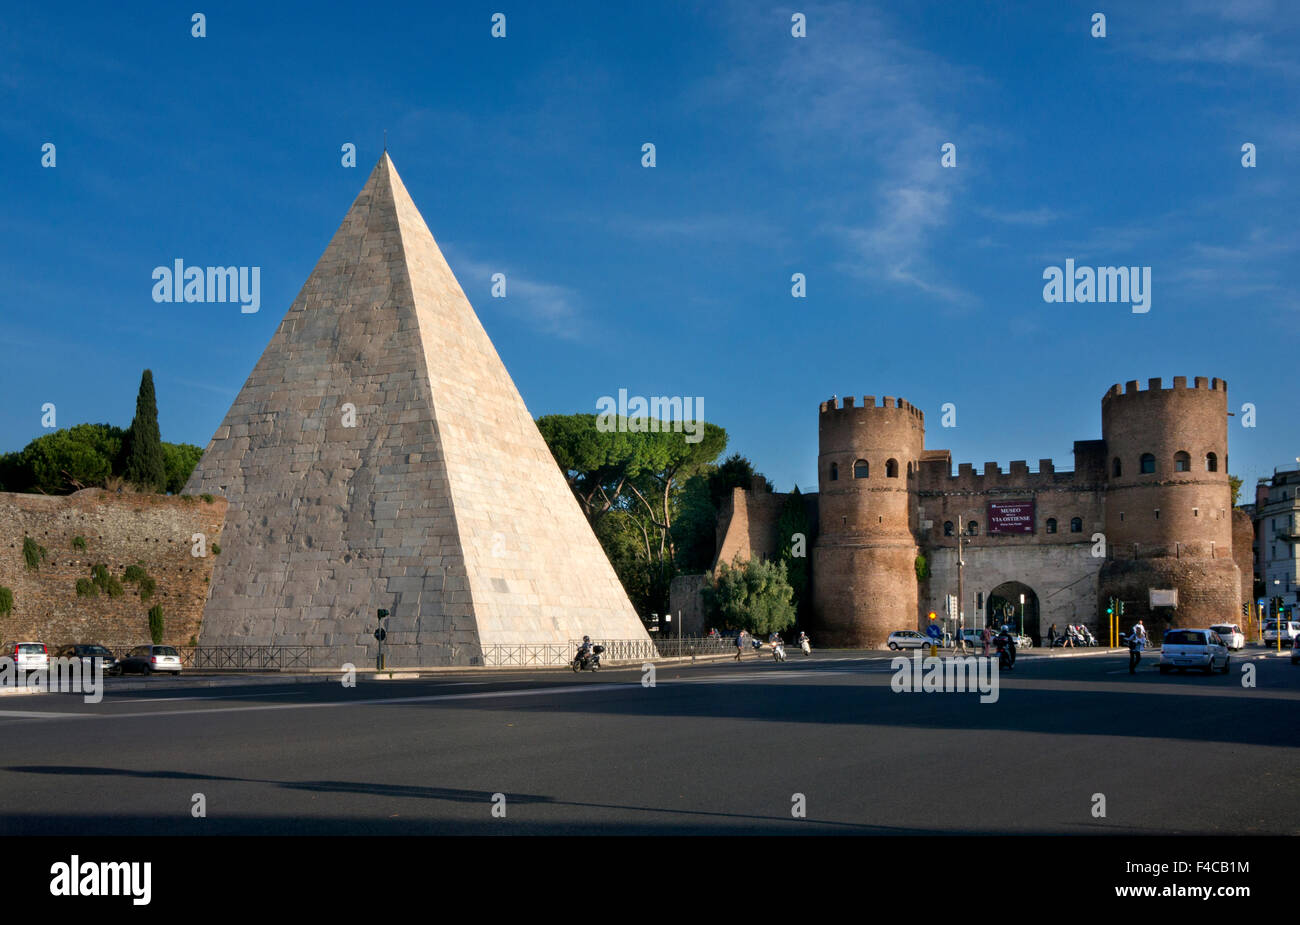 Pyramide de Cestius et Porta San Paolo porte d'ville, Rome Italie Banque D'Images